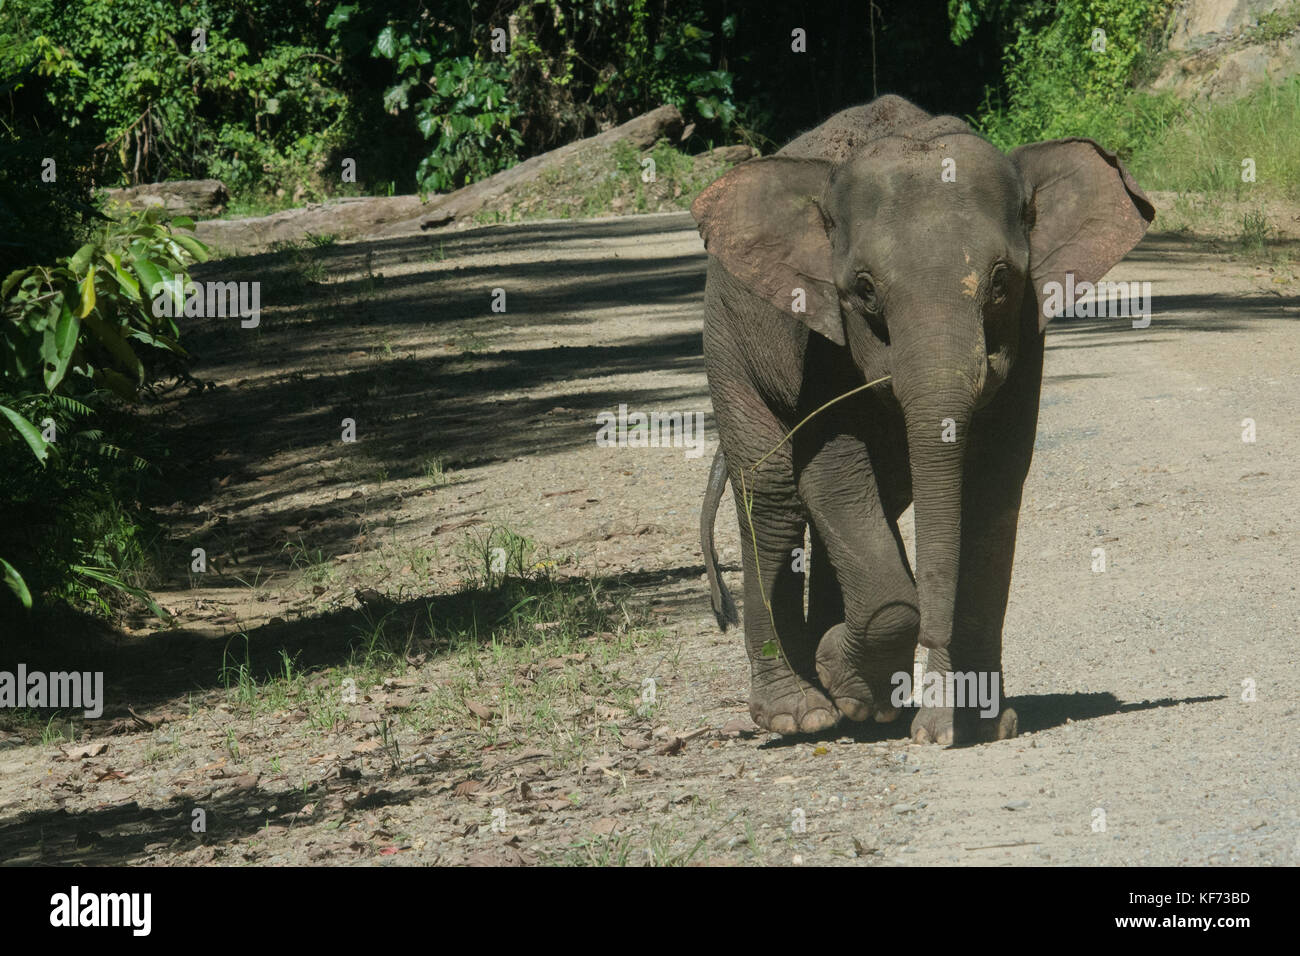 Un jeune éléphant pygmée de Bornéo, endémique à Bornéo, fonctionne sur une route traversant la forêt. Banque D'Images